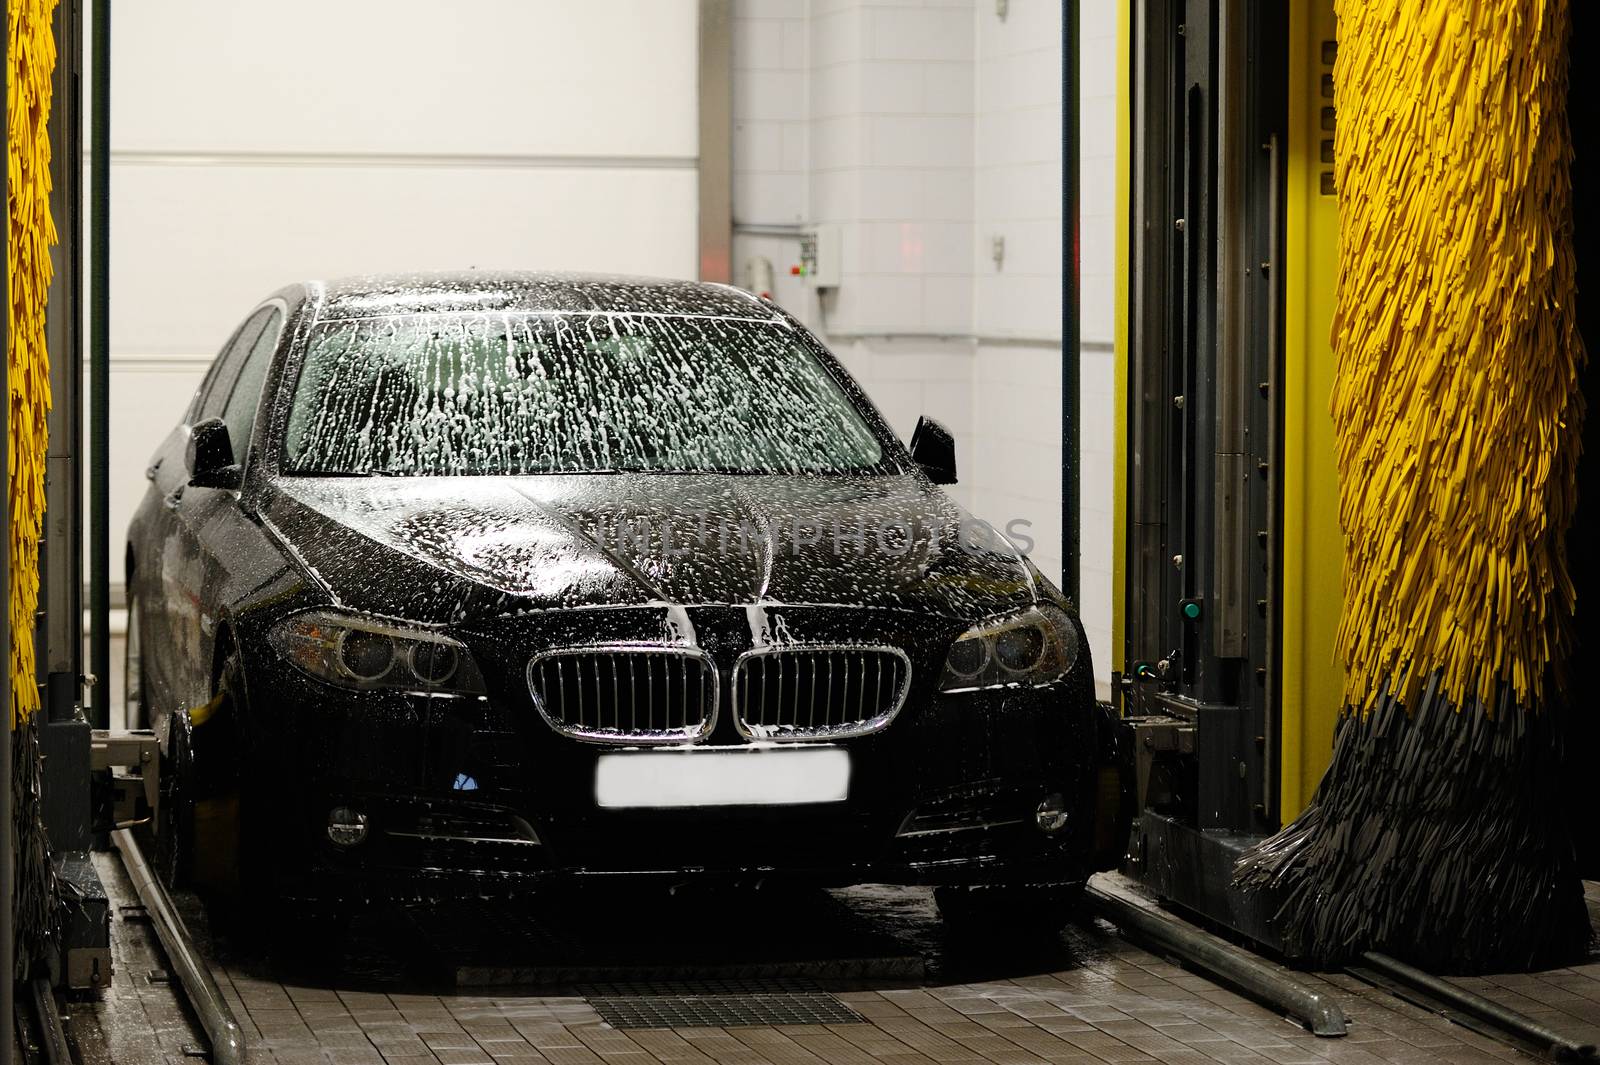 Car washing station by dimarik